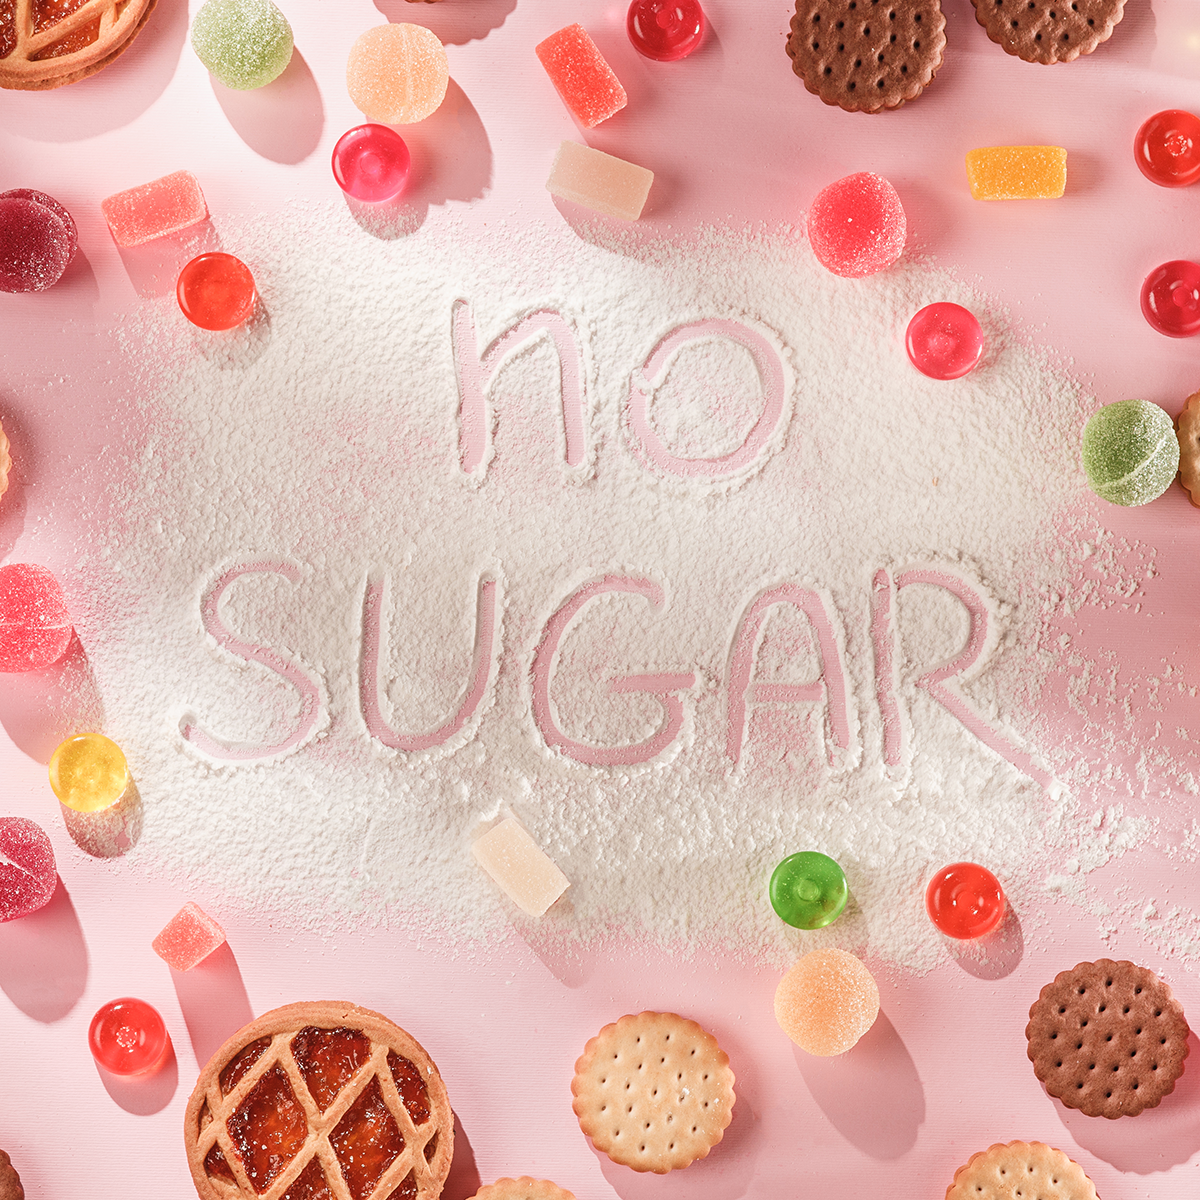 Czym zastąpić cukier w przepisach kulinarnych?